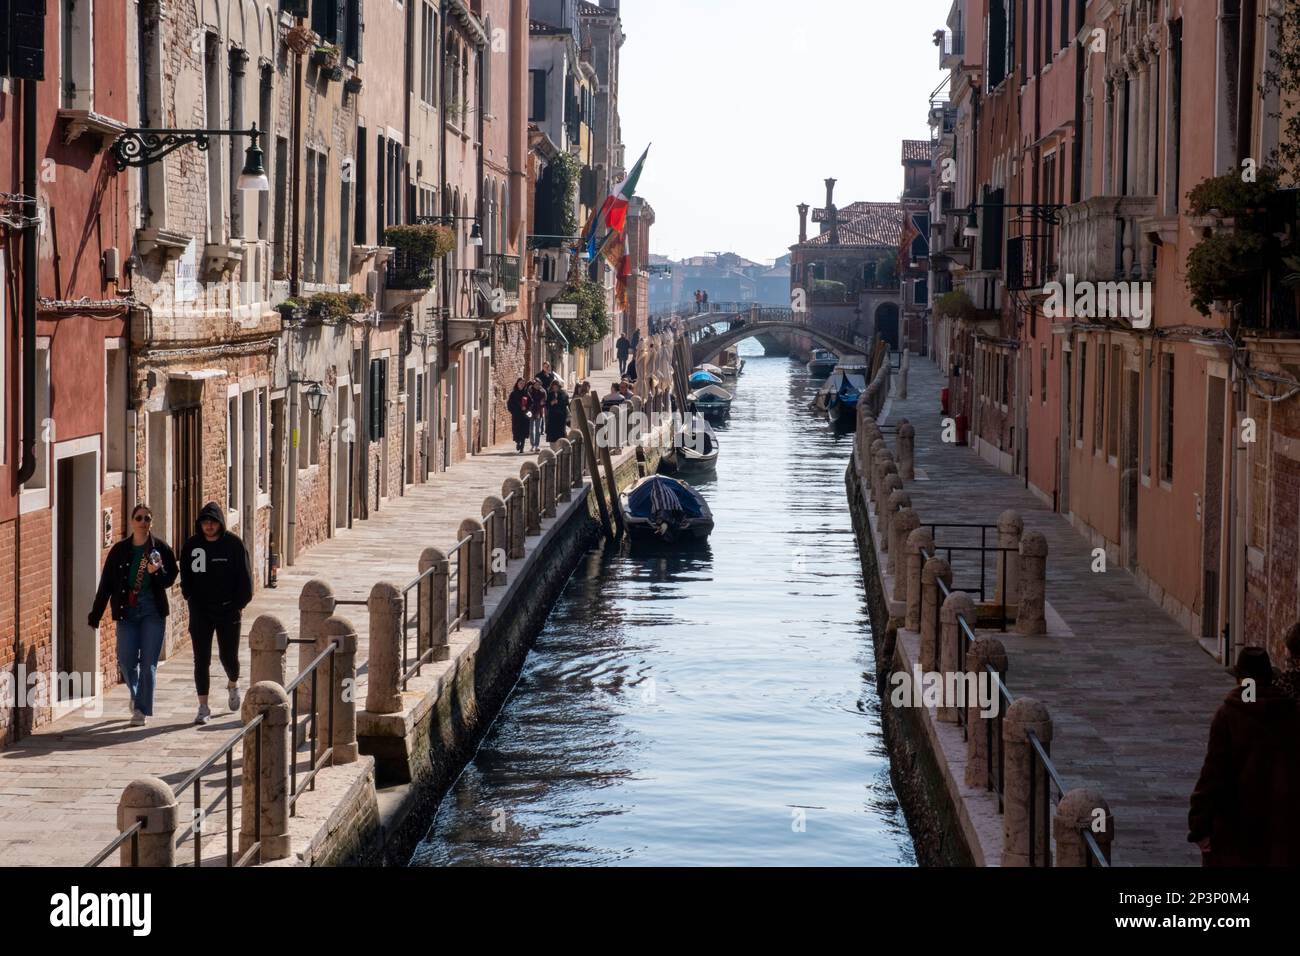 View of the Fondamenta Soranzo detta Fornace along the Rio della Fornace, Venice, Italy. Stock Photo